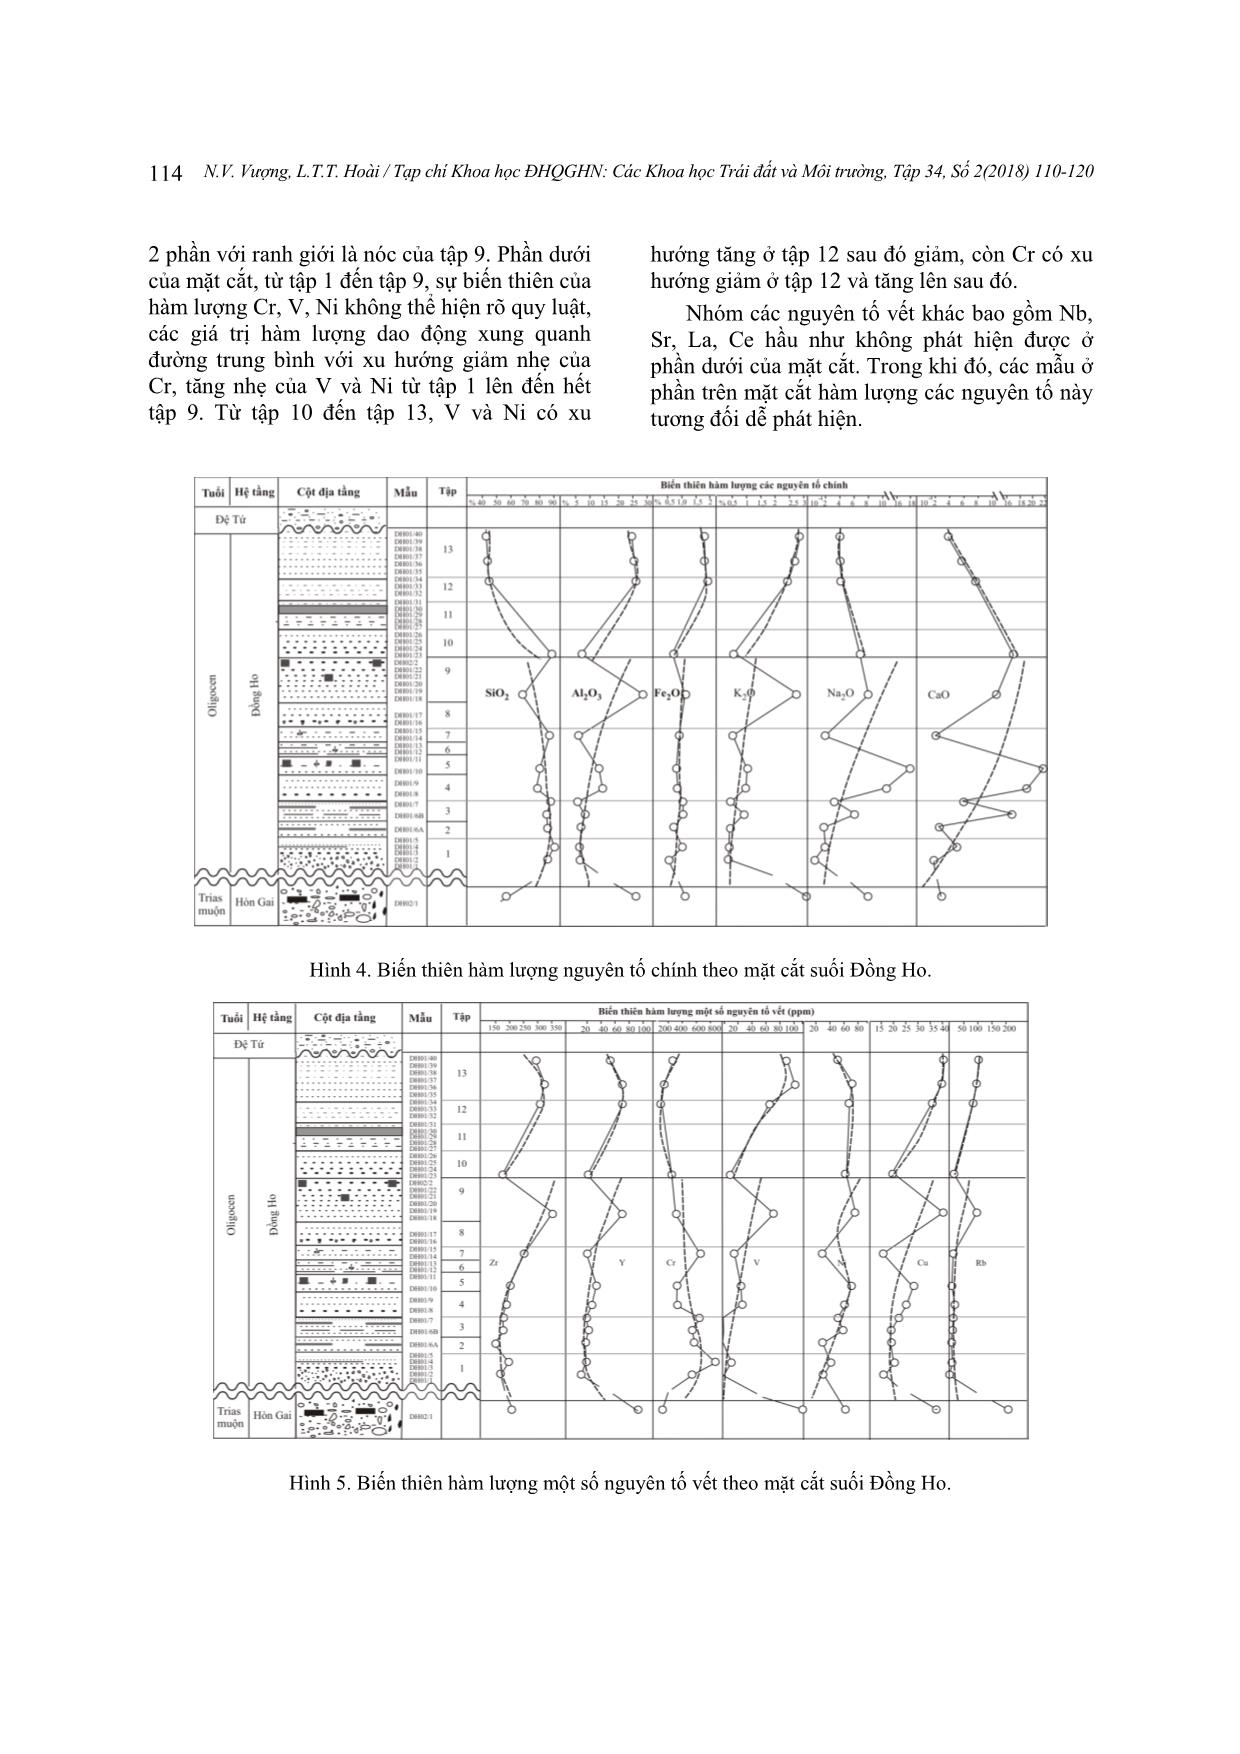 Địa hóa nguyên tố chính và nguyên tố vết của các trầm tích hệ tầng Đồng Ho, Quảng Ninh và ý nghĩa của chúng trong việc xác định điều kiện cổ môi trường trang 5